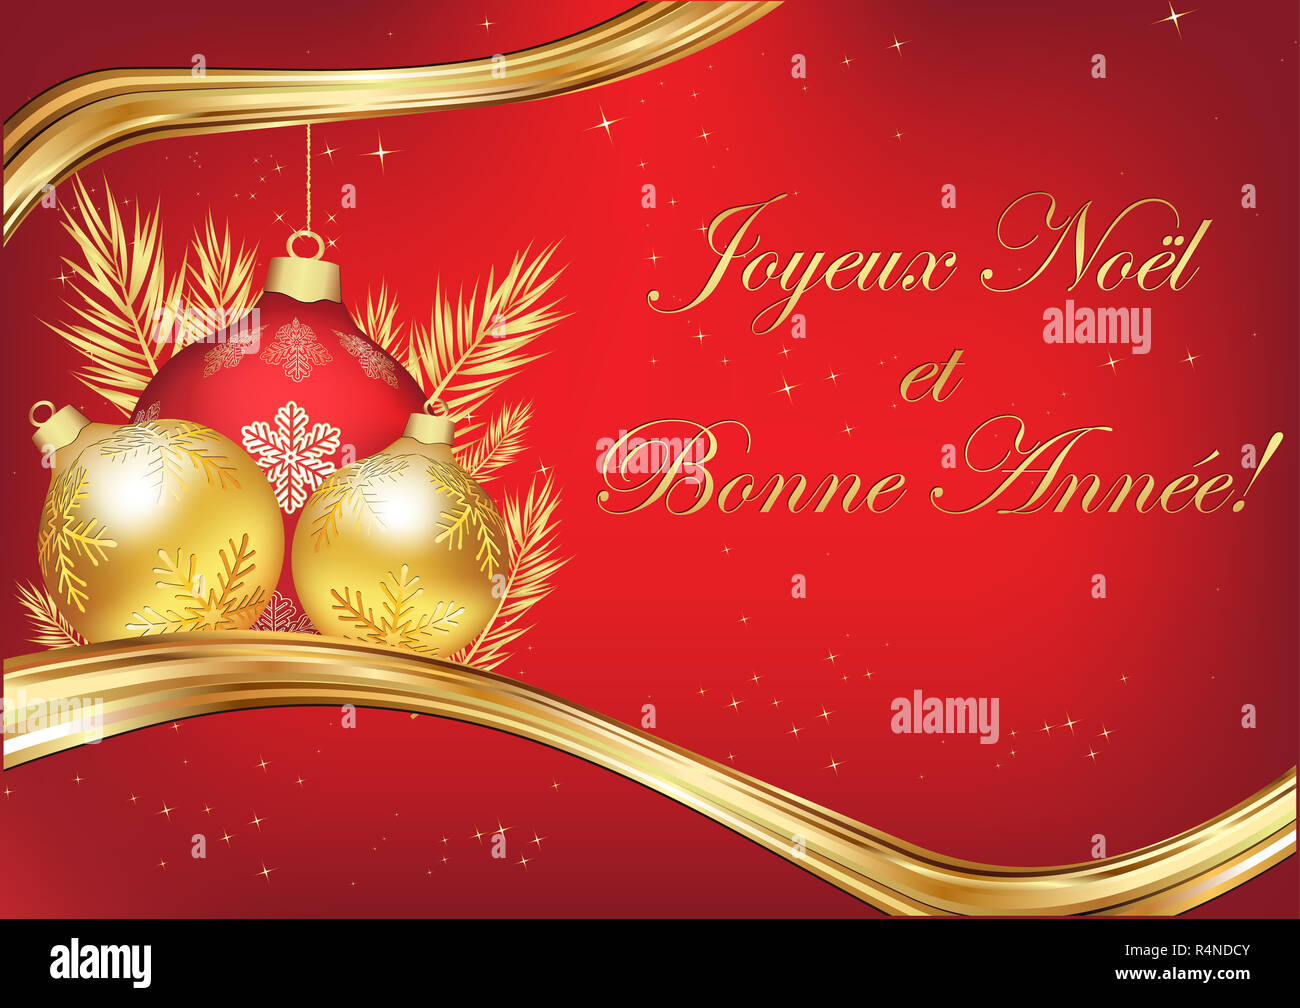 Frasi Di Auguri Di Natale In Francese.Biglietto D Auguri Francese Immagini E Fotos Stock Alamy